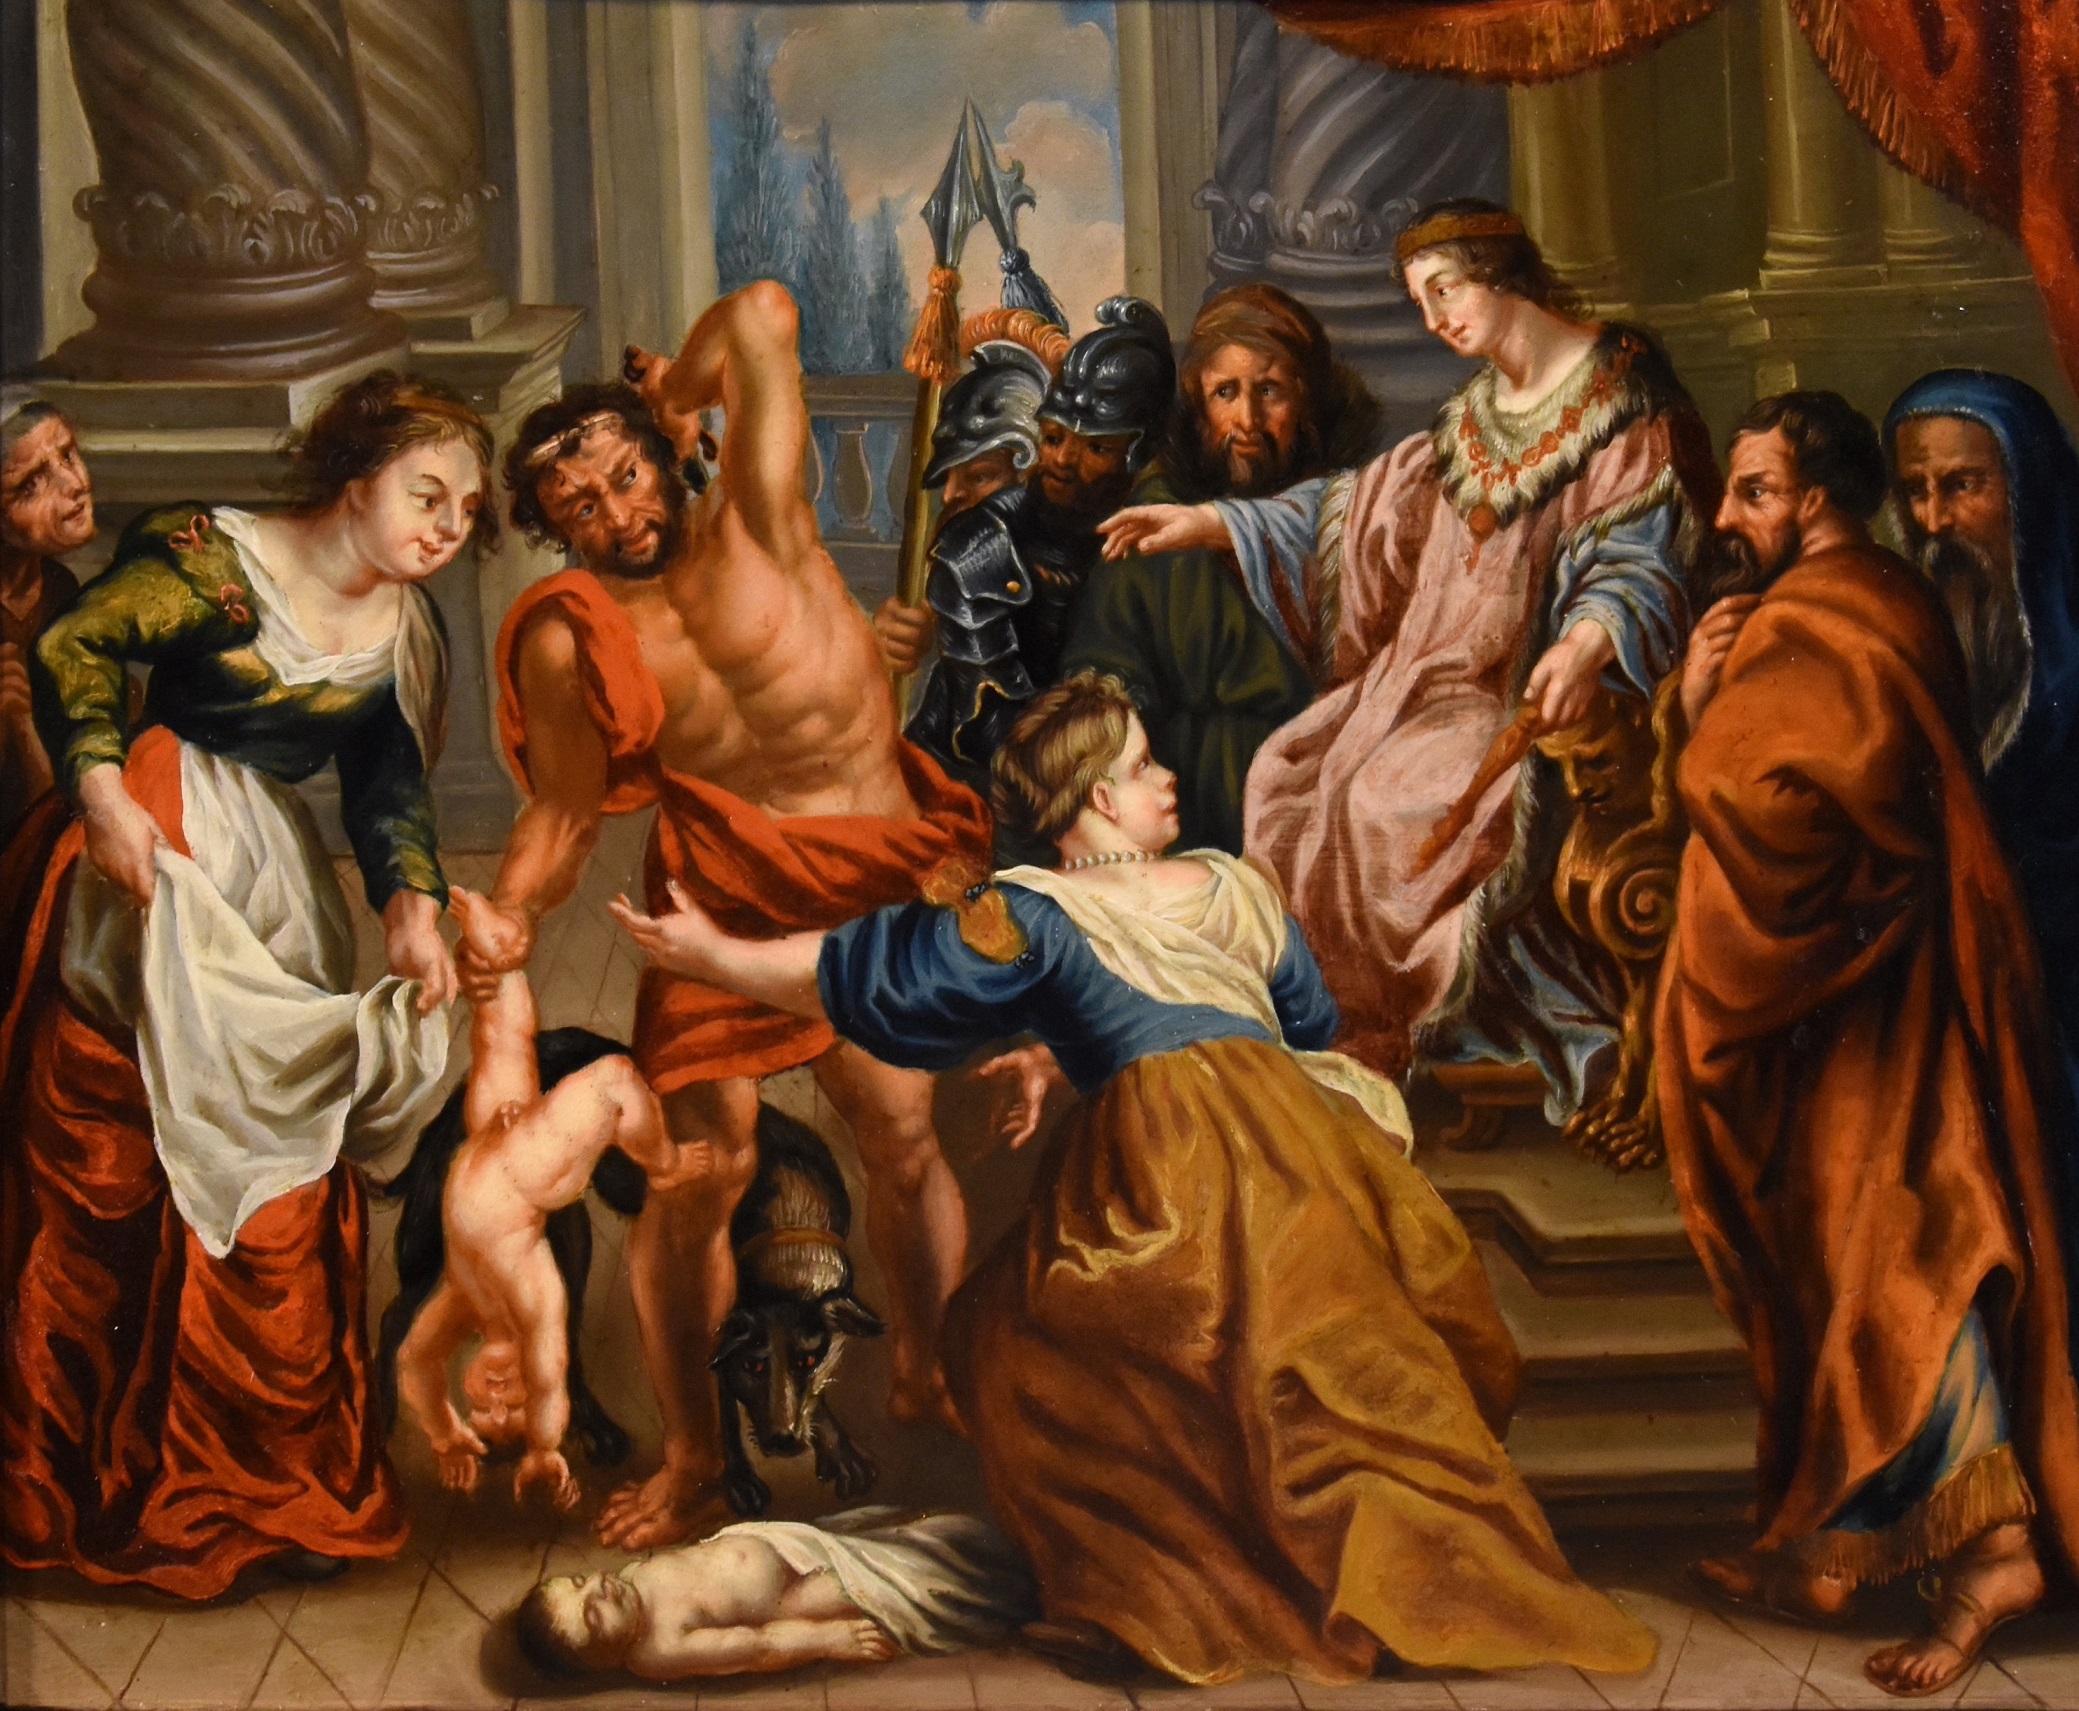 König Salomon Rubens Gemälde Öl auf Kupfer 17. Jahrhundert Alter Meister Flemish Art (Alte Meister), Painting, von Circle of Peter Paul Rubens (Siegen 1577 - Antwerp 1640)